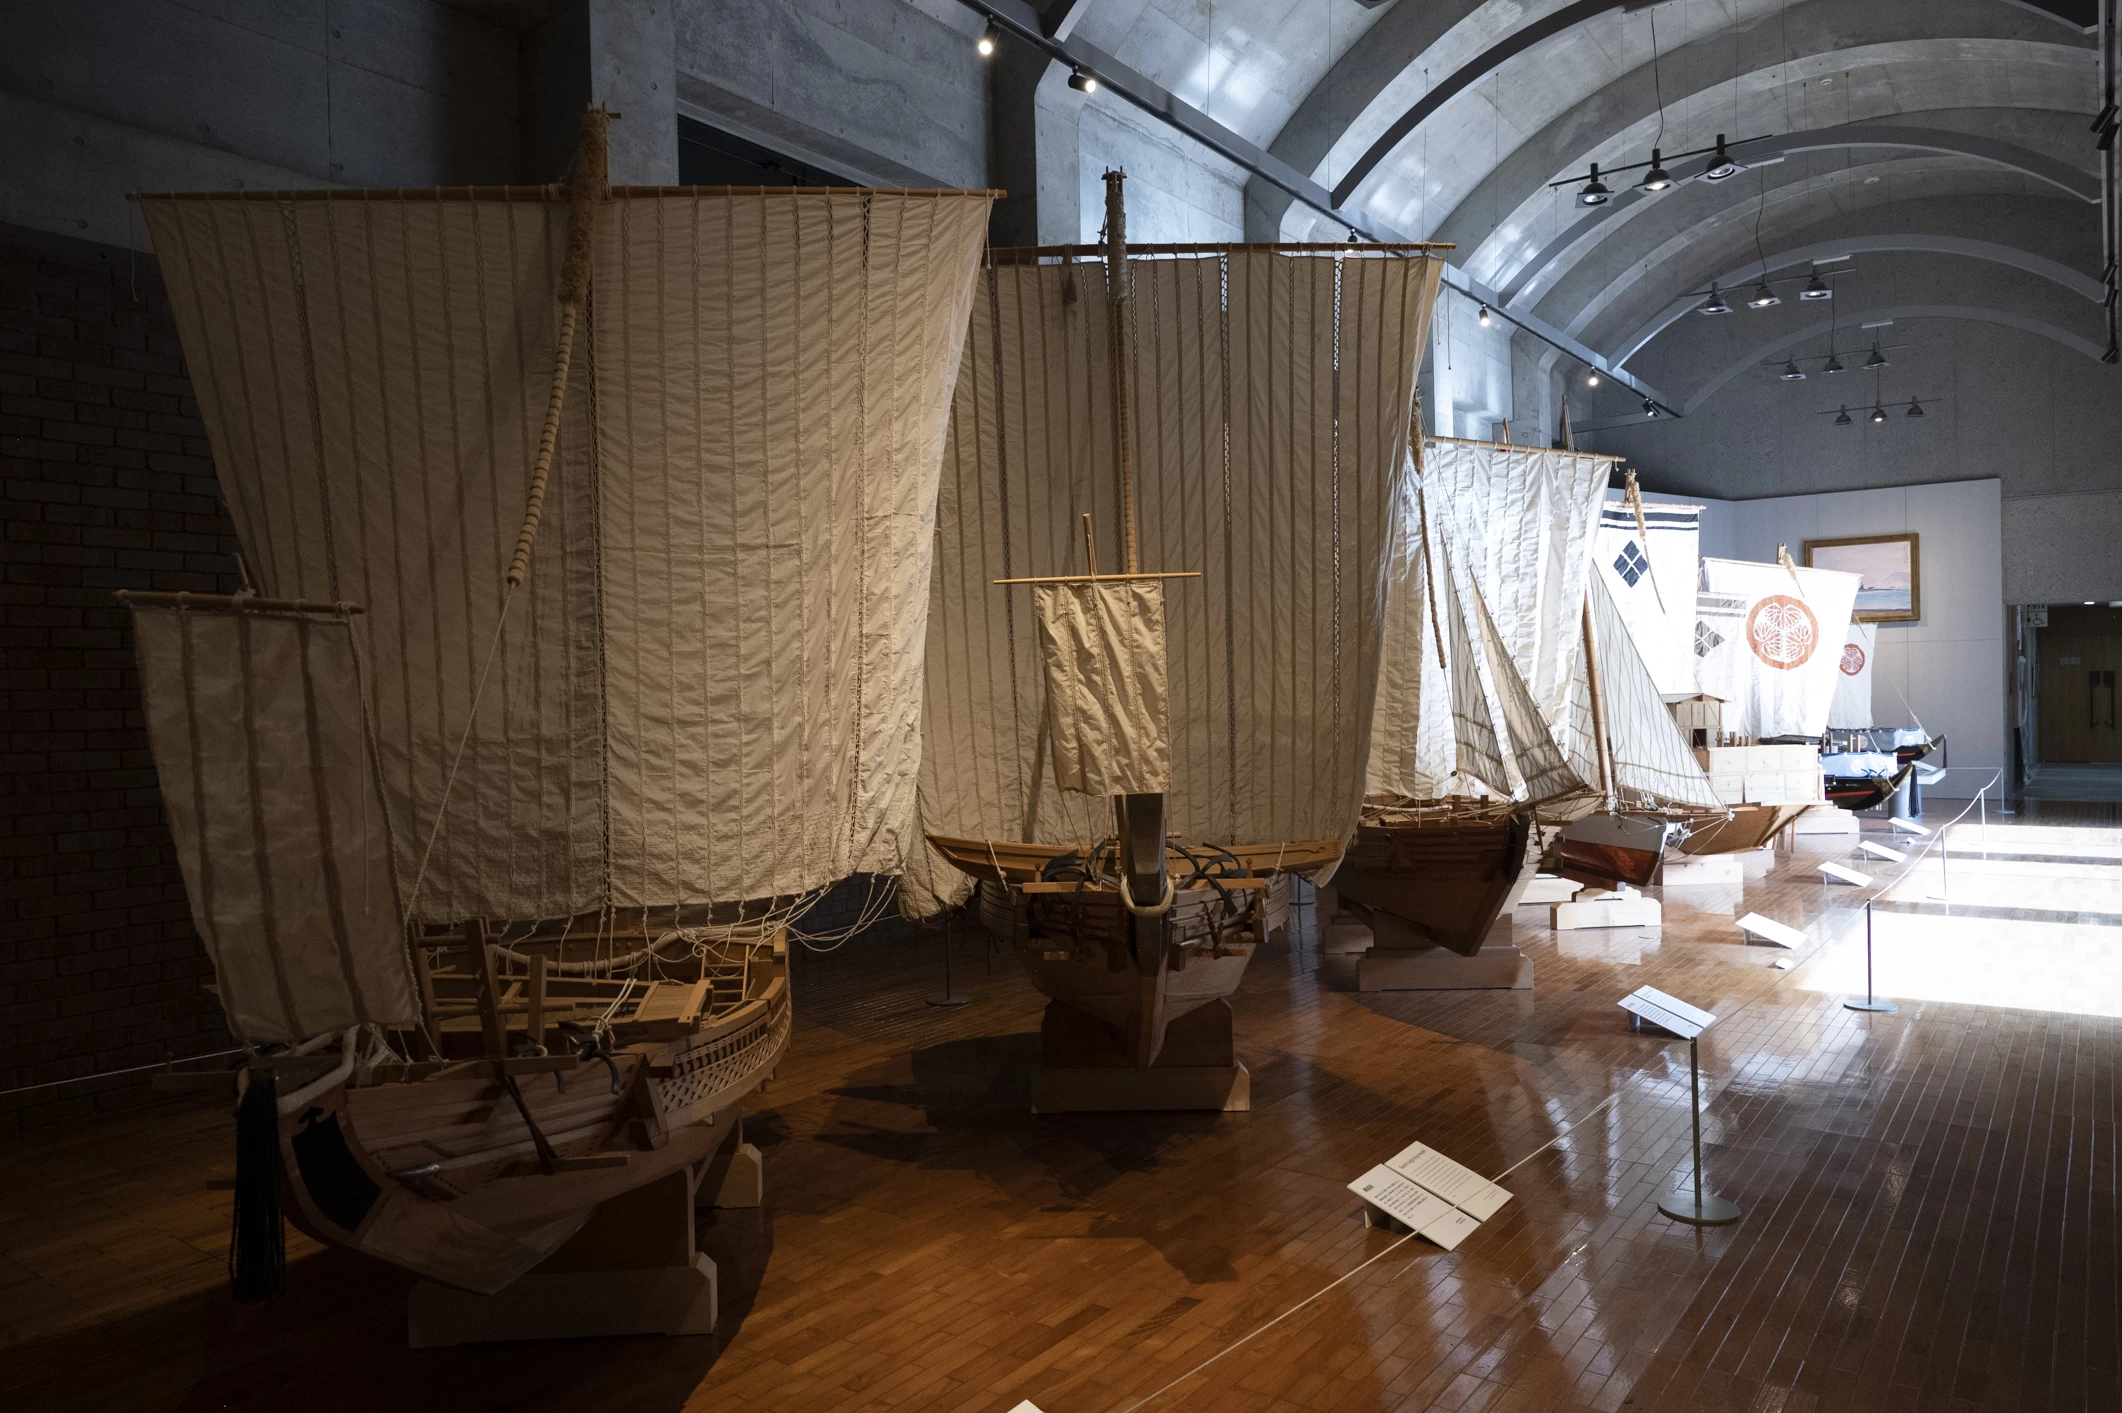 駿河湾で活躍した武田軍や徳川軍の船の模型も展示されている